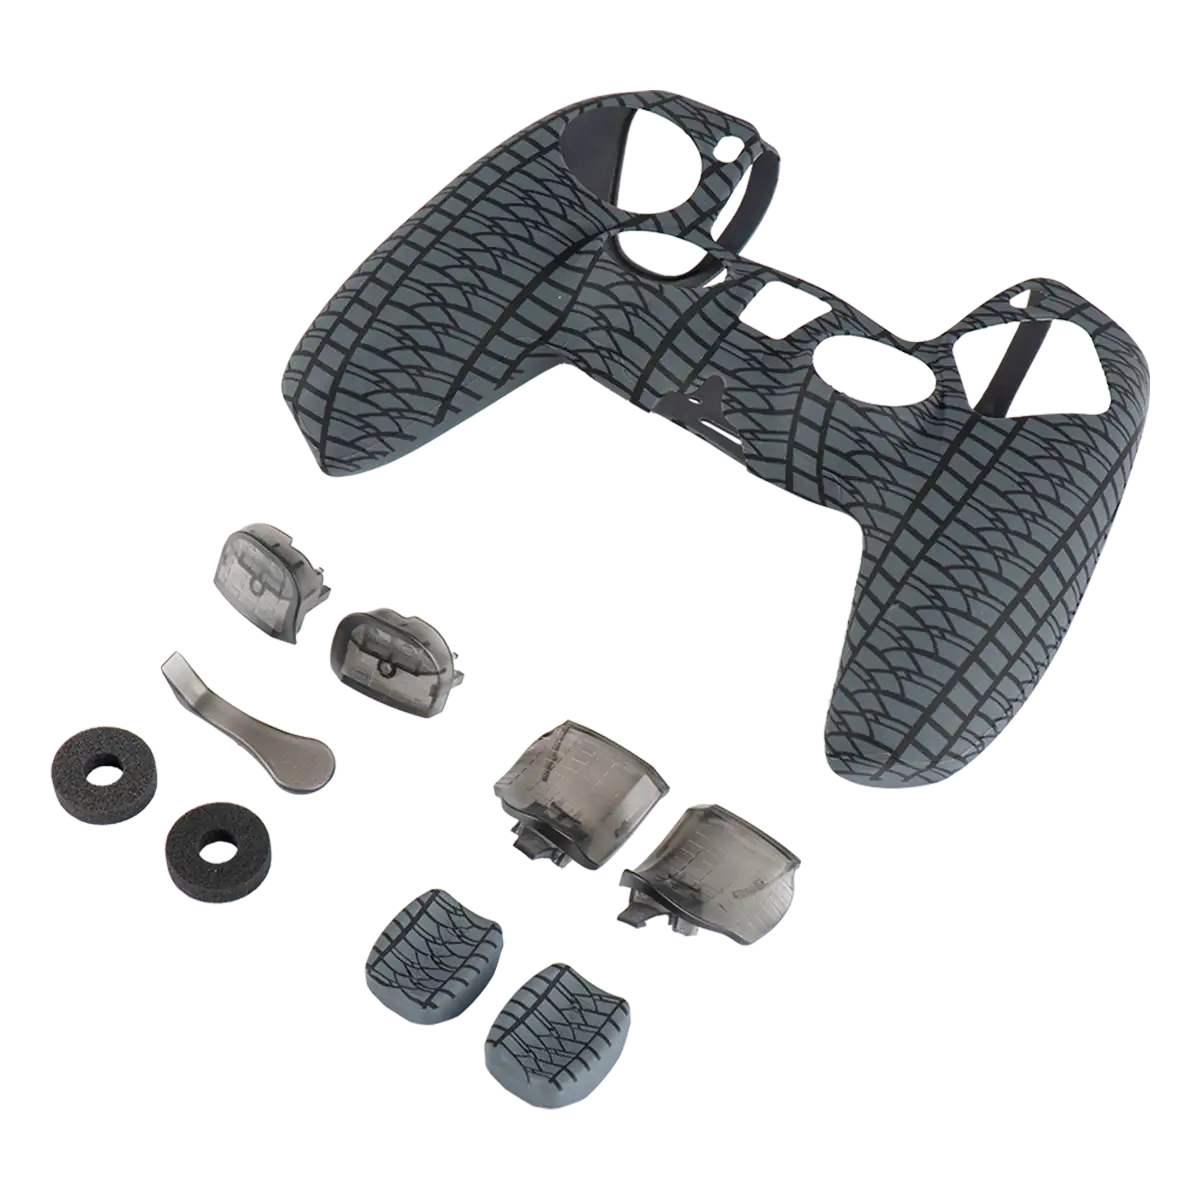 PS5 Racing Enhance Kit Image 3